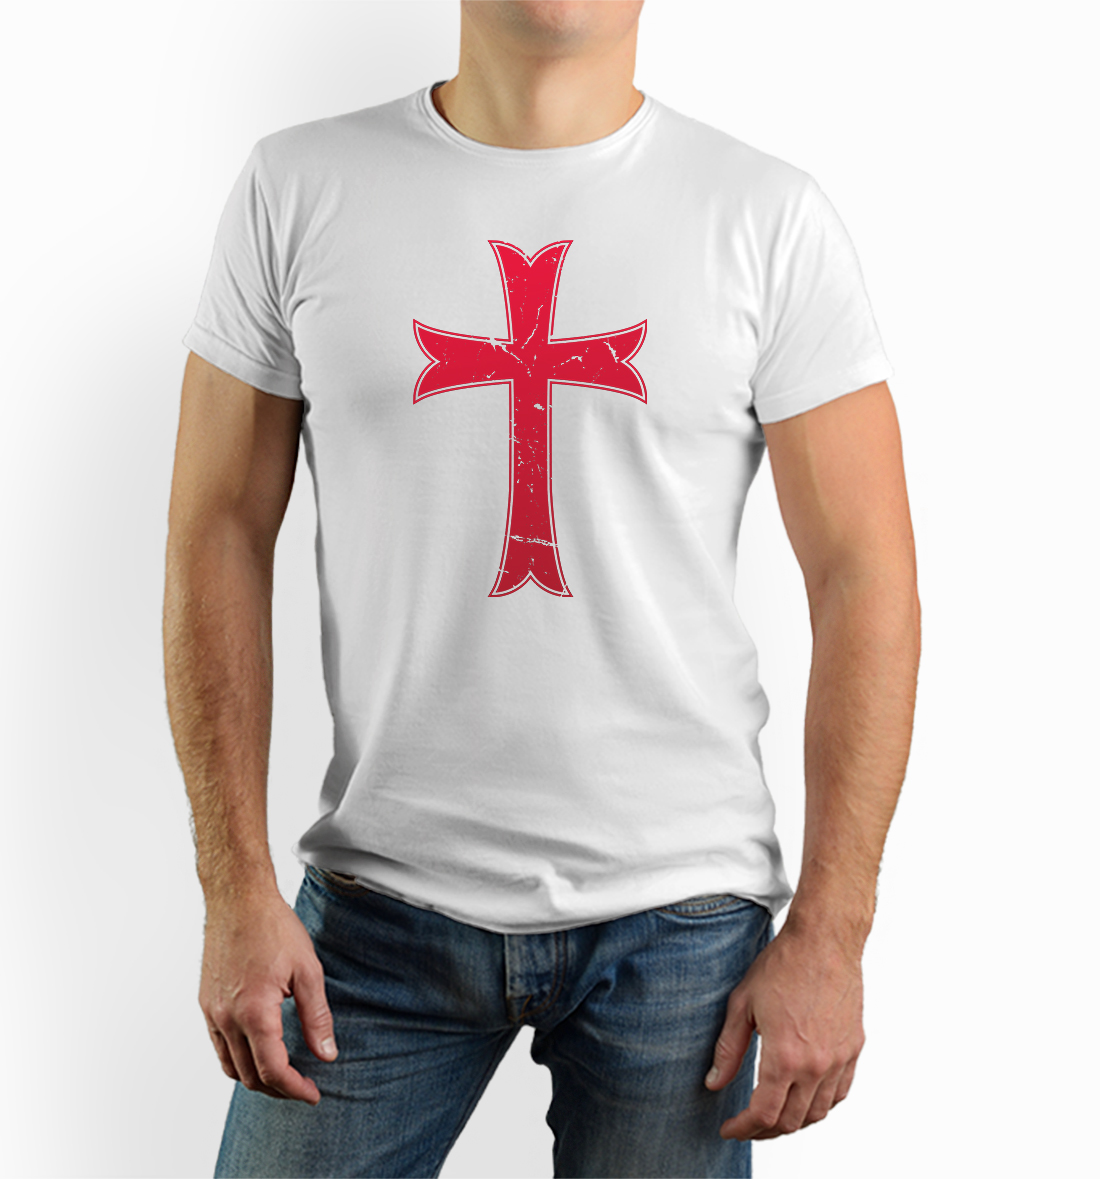 Knights Templar cross Tshirt